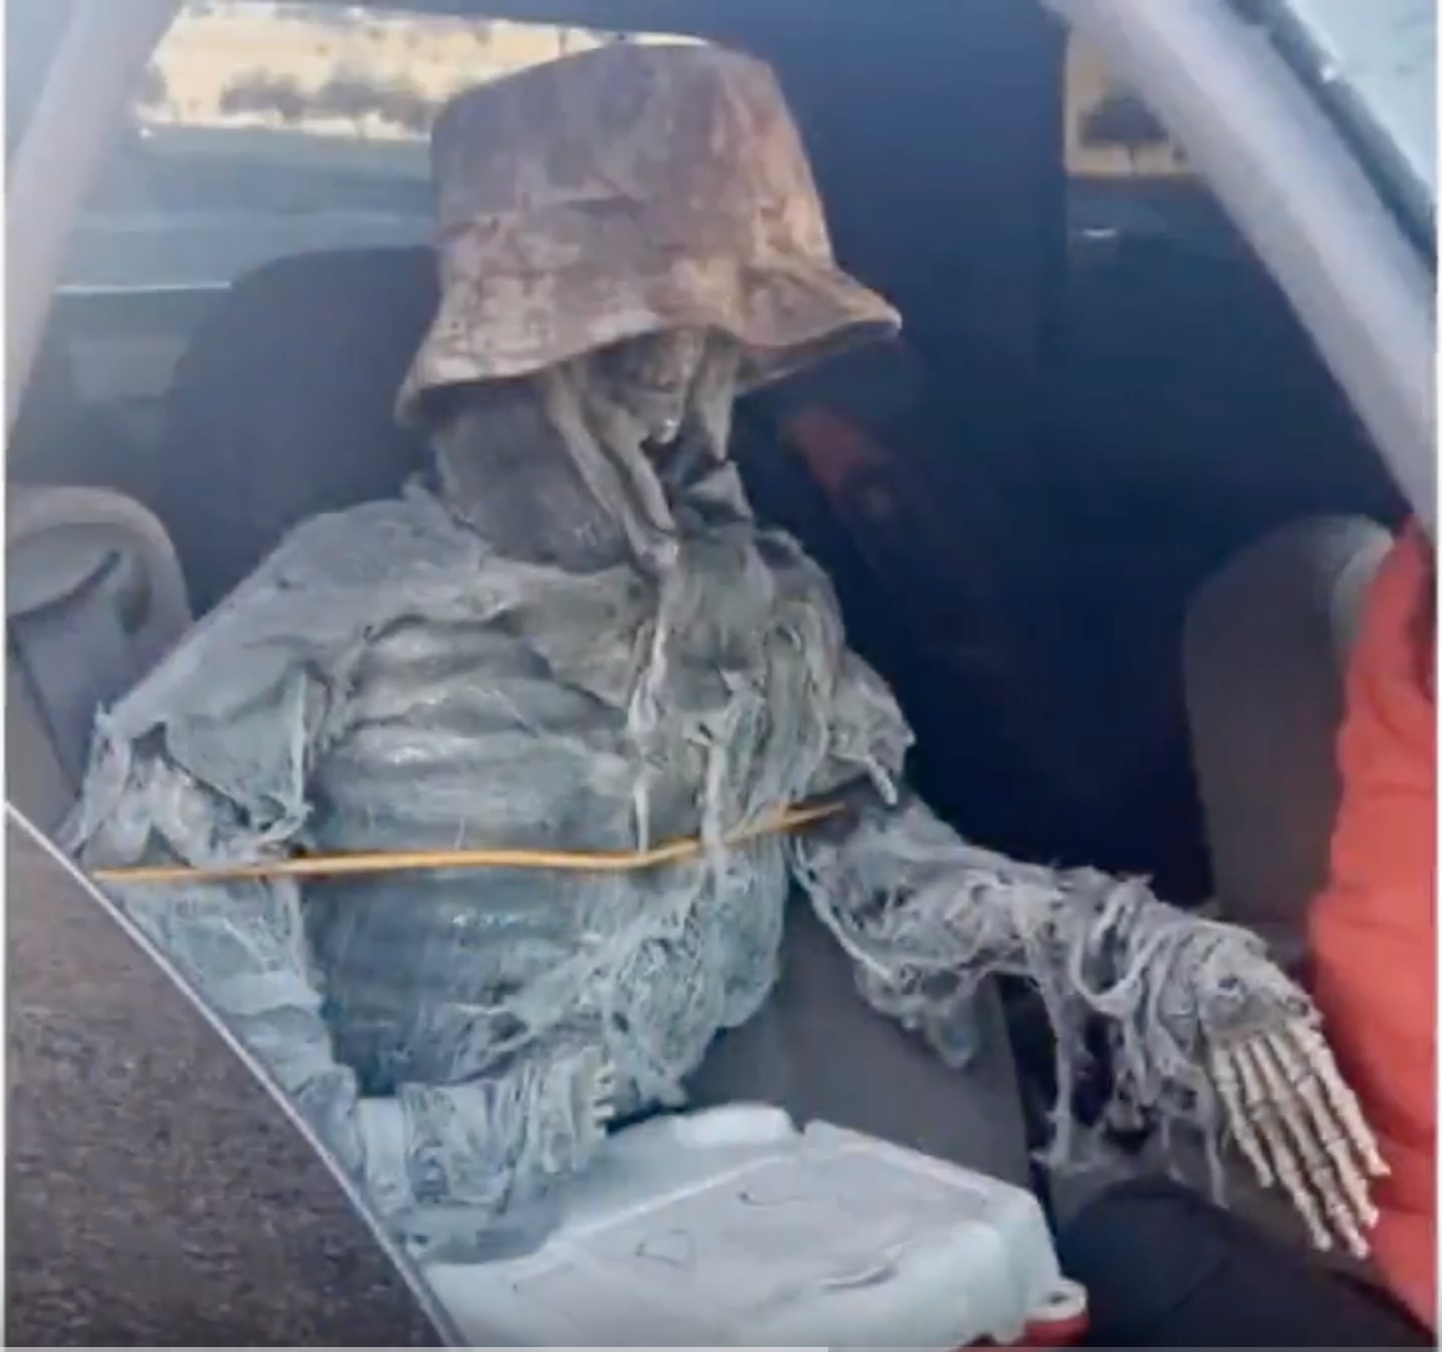 Arizona politsei avastas ühissõidurajal sõitnud autost plastikust luukere, mis oli kaasreisijaks maskeeritud.